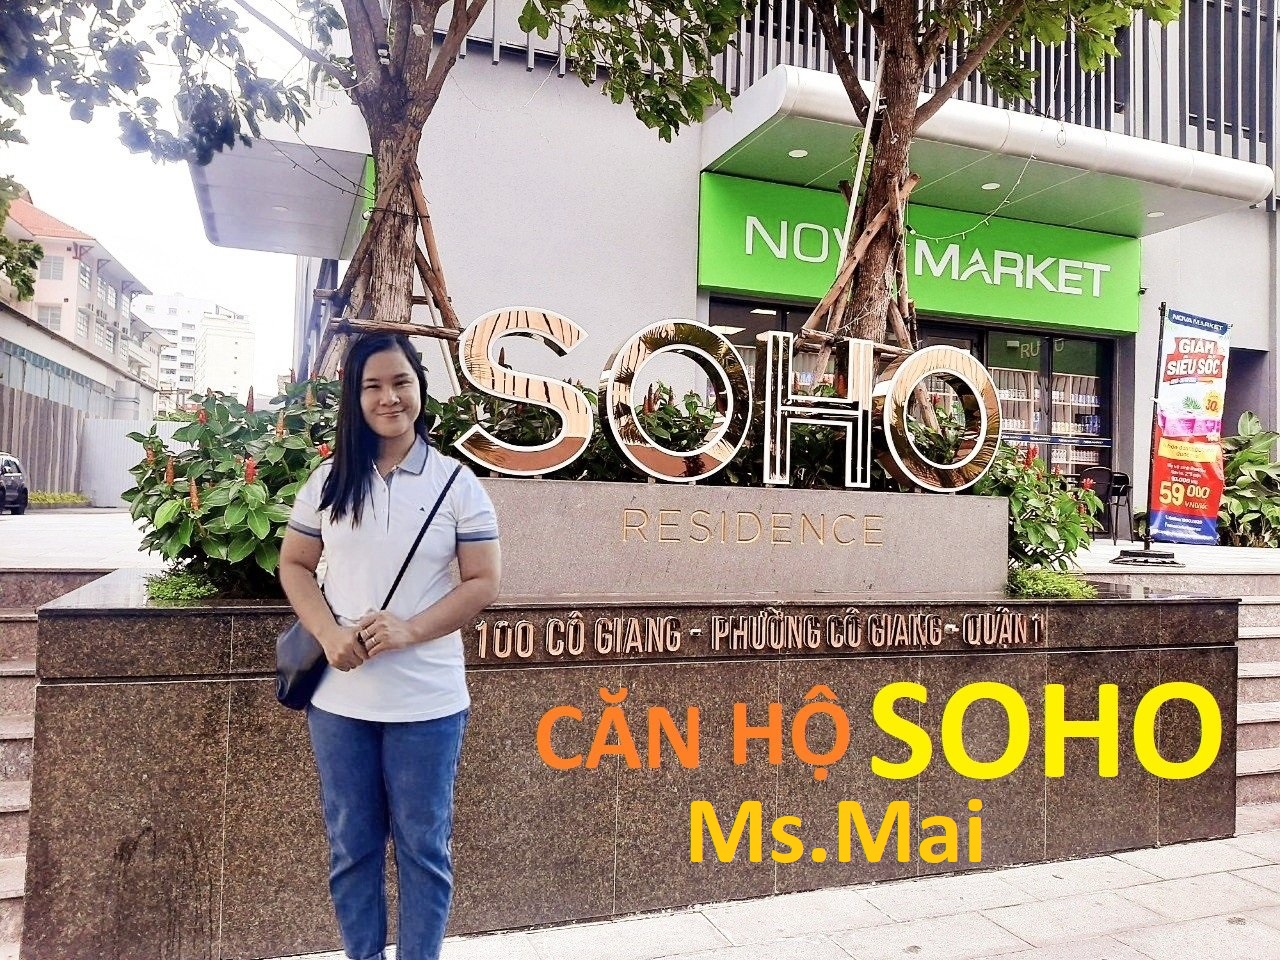 Ms.Mai - Chuyên ký gửi căn hộ Soho Residence